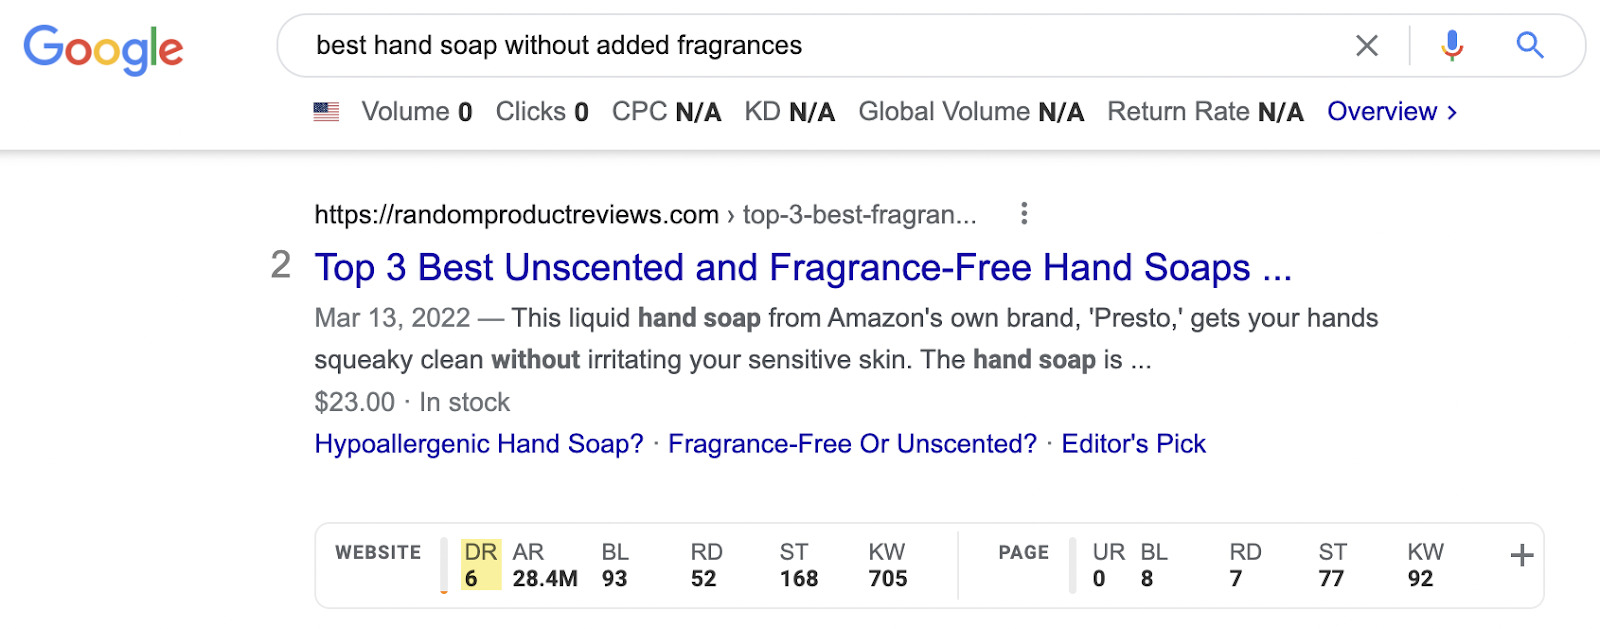 SERP do Google para "melhor sabonete sem perfume"; Barra de ferramentas de SEO mostrando um resultado com DR de 6